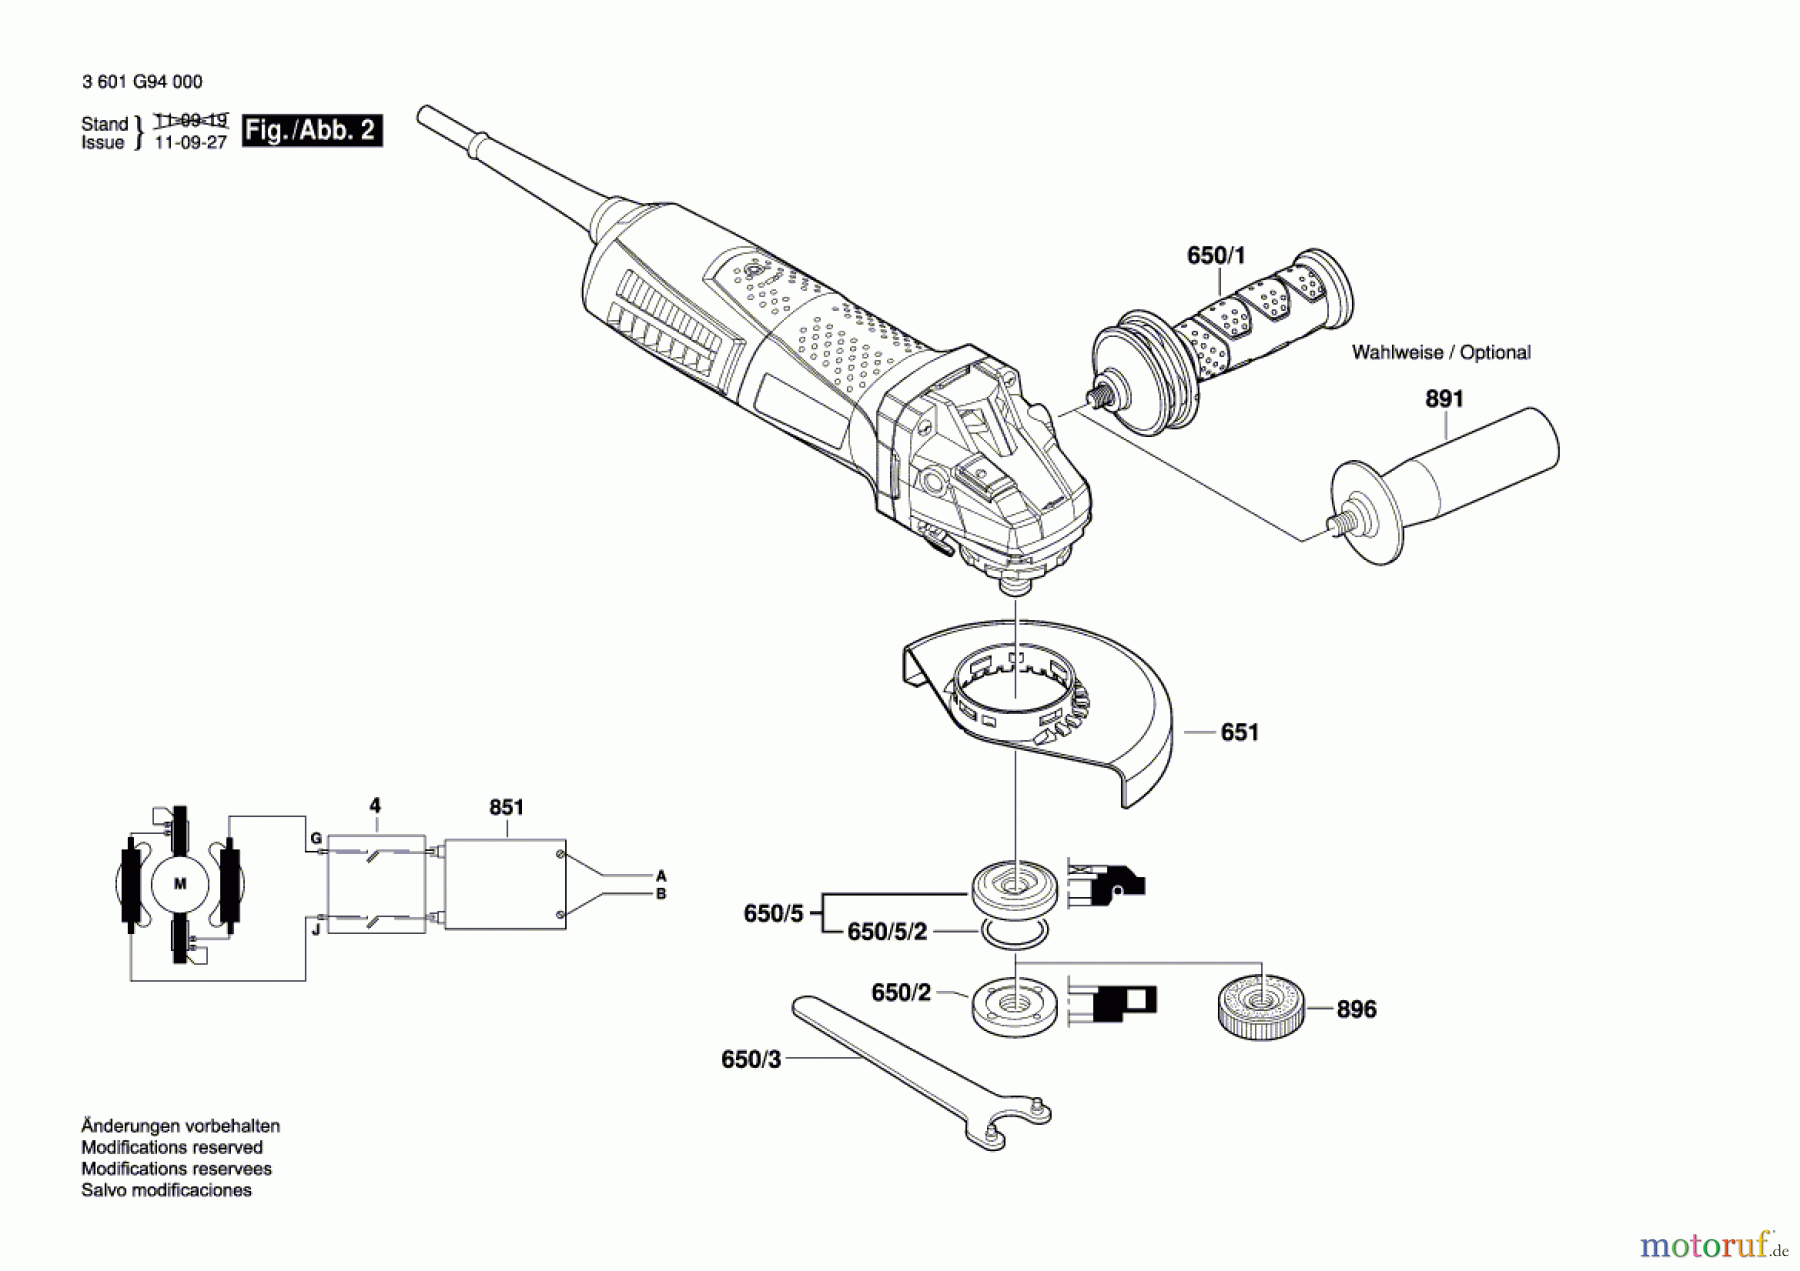  Bosch Werkzeug Winkelschleifer GWS 12-125 CIE Seite 2